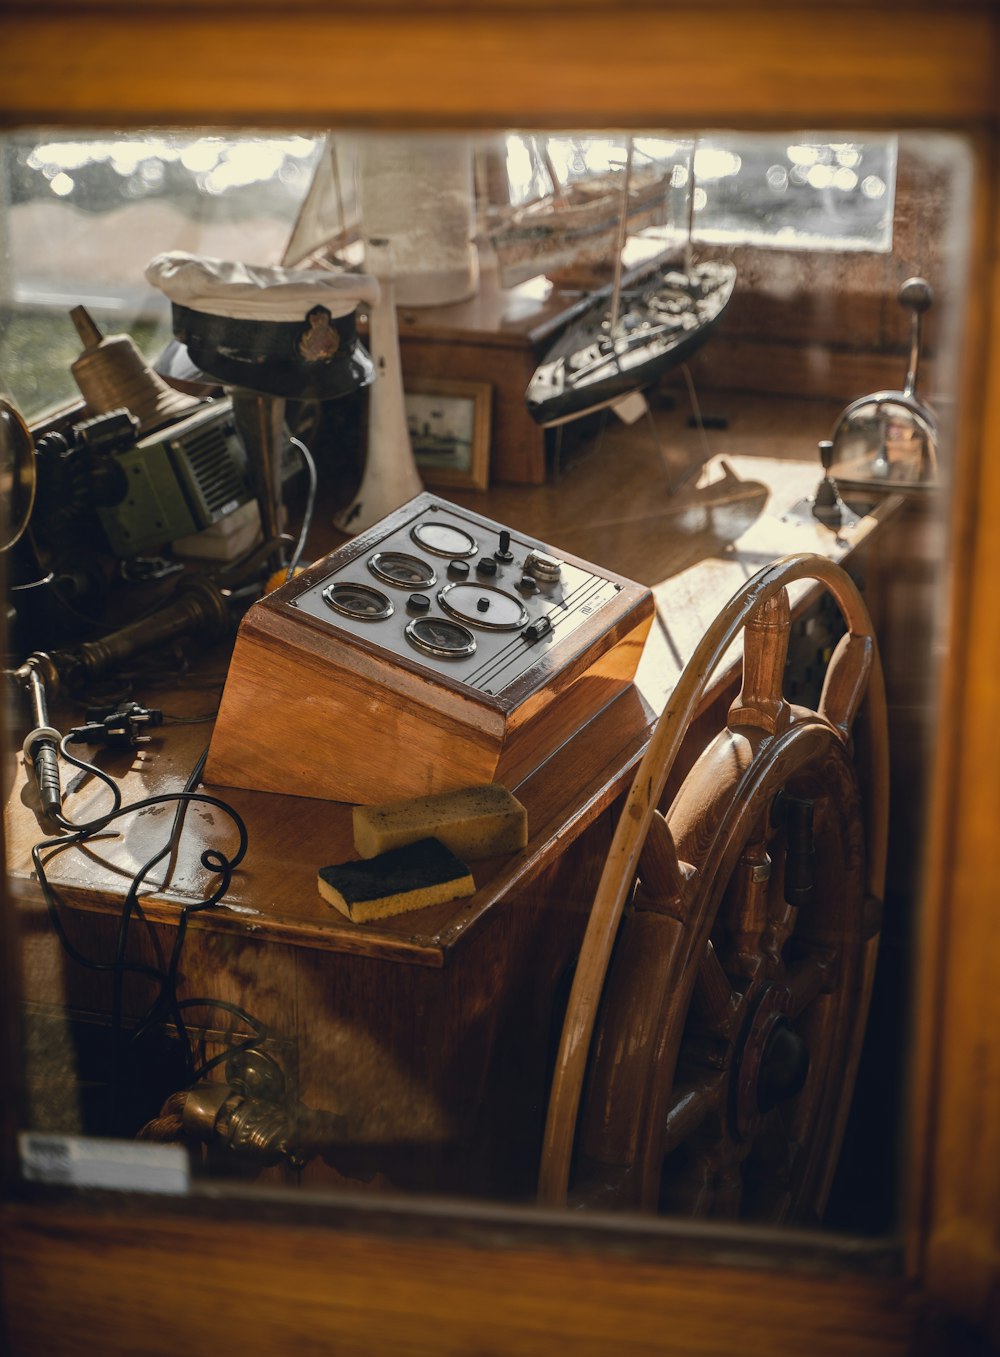 Il volante di una barca e altri oggetti sono visti attraverso una finestra